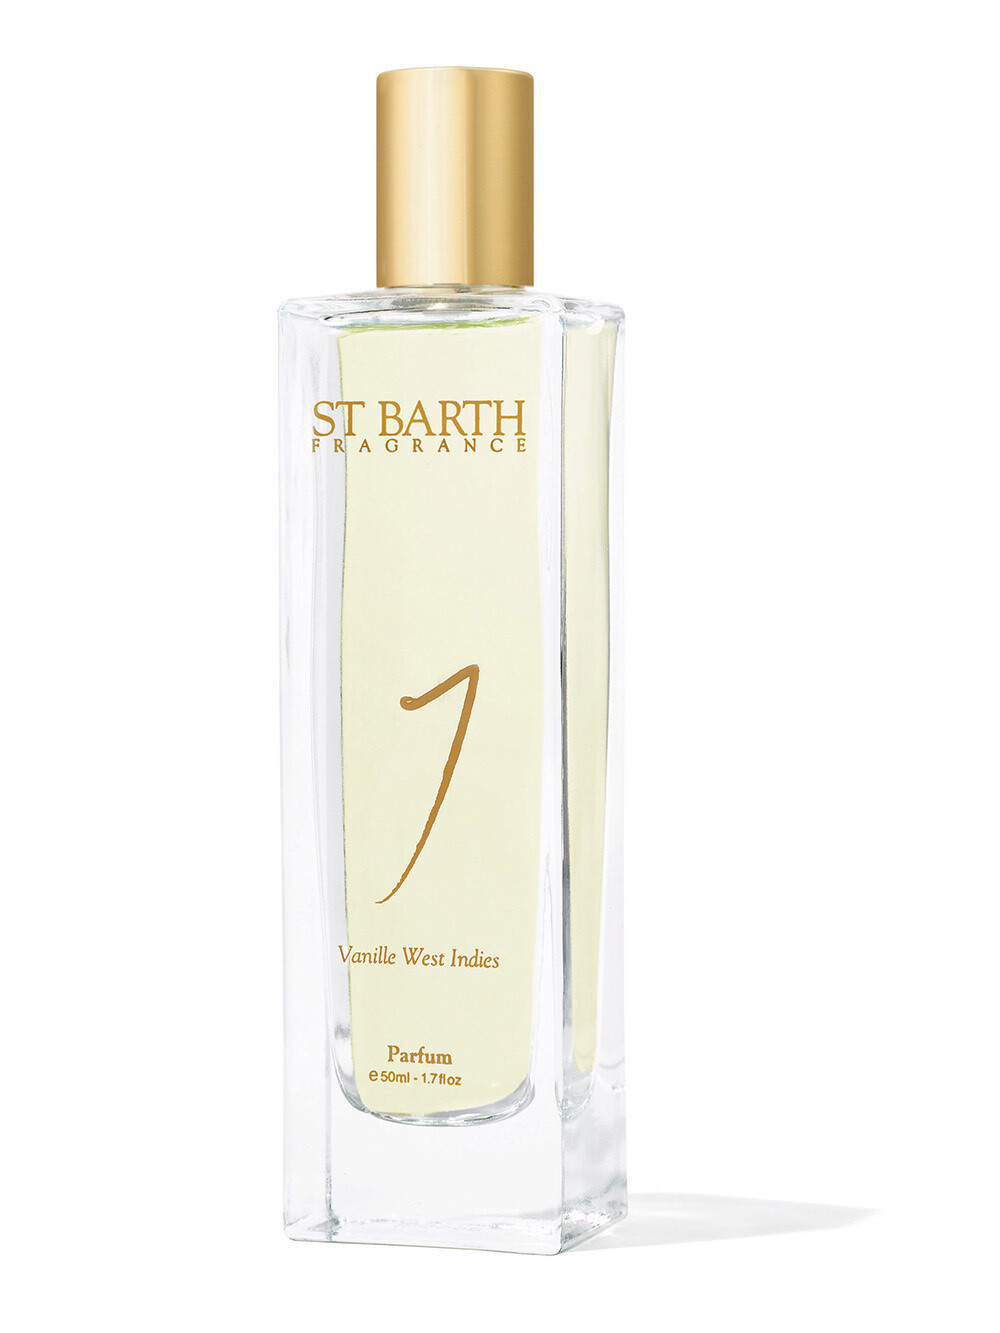 ST BARTH Parfum Vanille West Indies